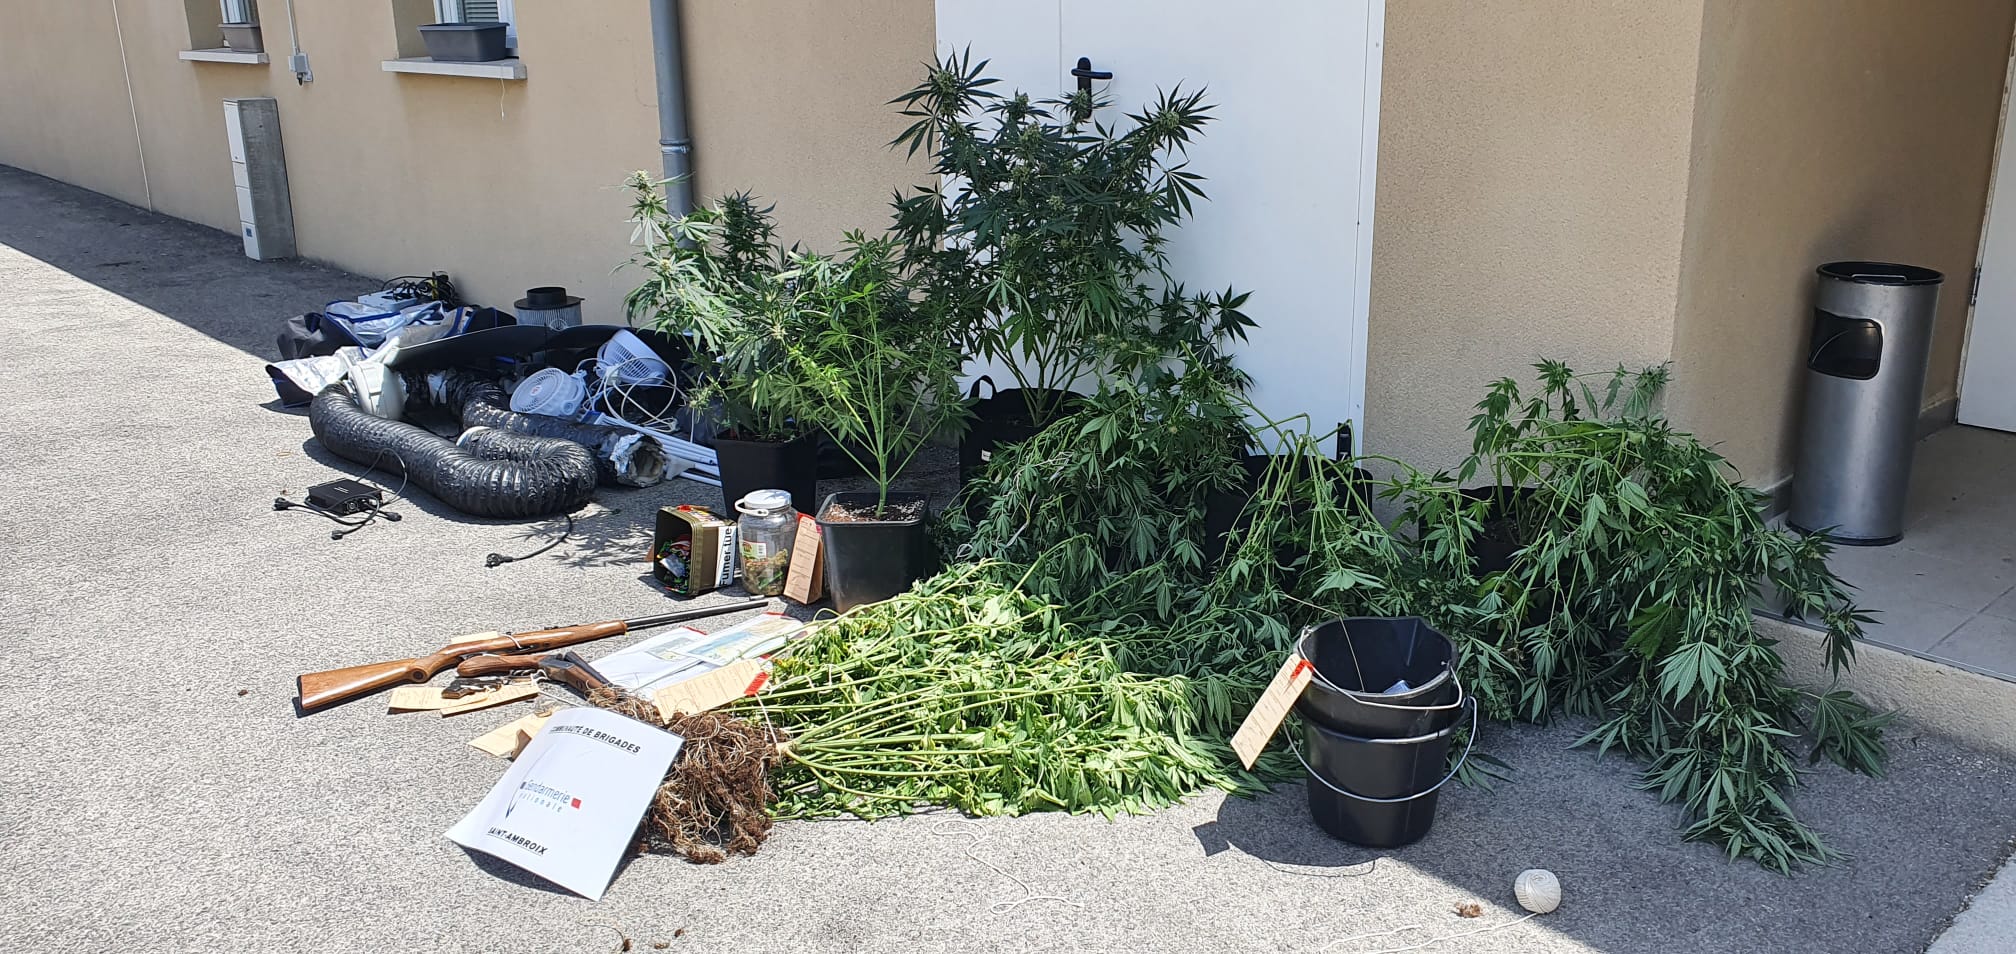 Saint-Ambroix : Découverte de pieds de cannabis et d’armes